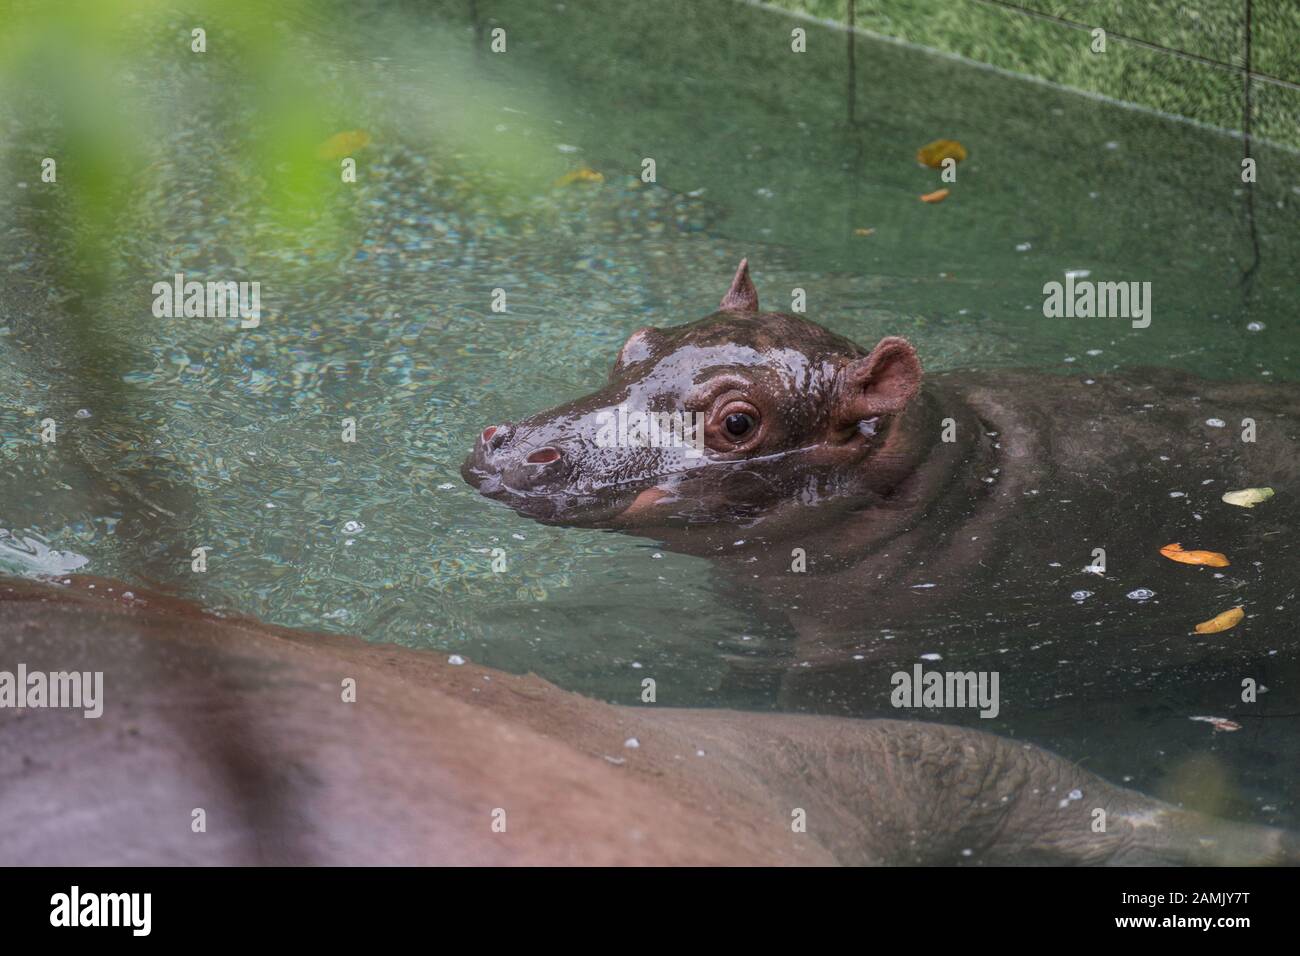 Ho Chi Minh, Vietnam - 23 de enero de 2018: El bebé hipopótamo nada en la piscina junto a su madre Foto de stock